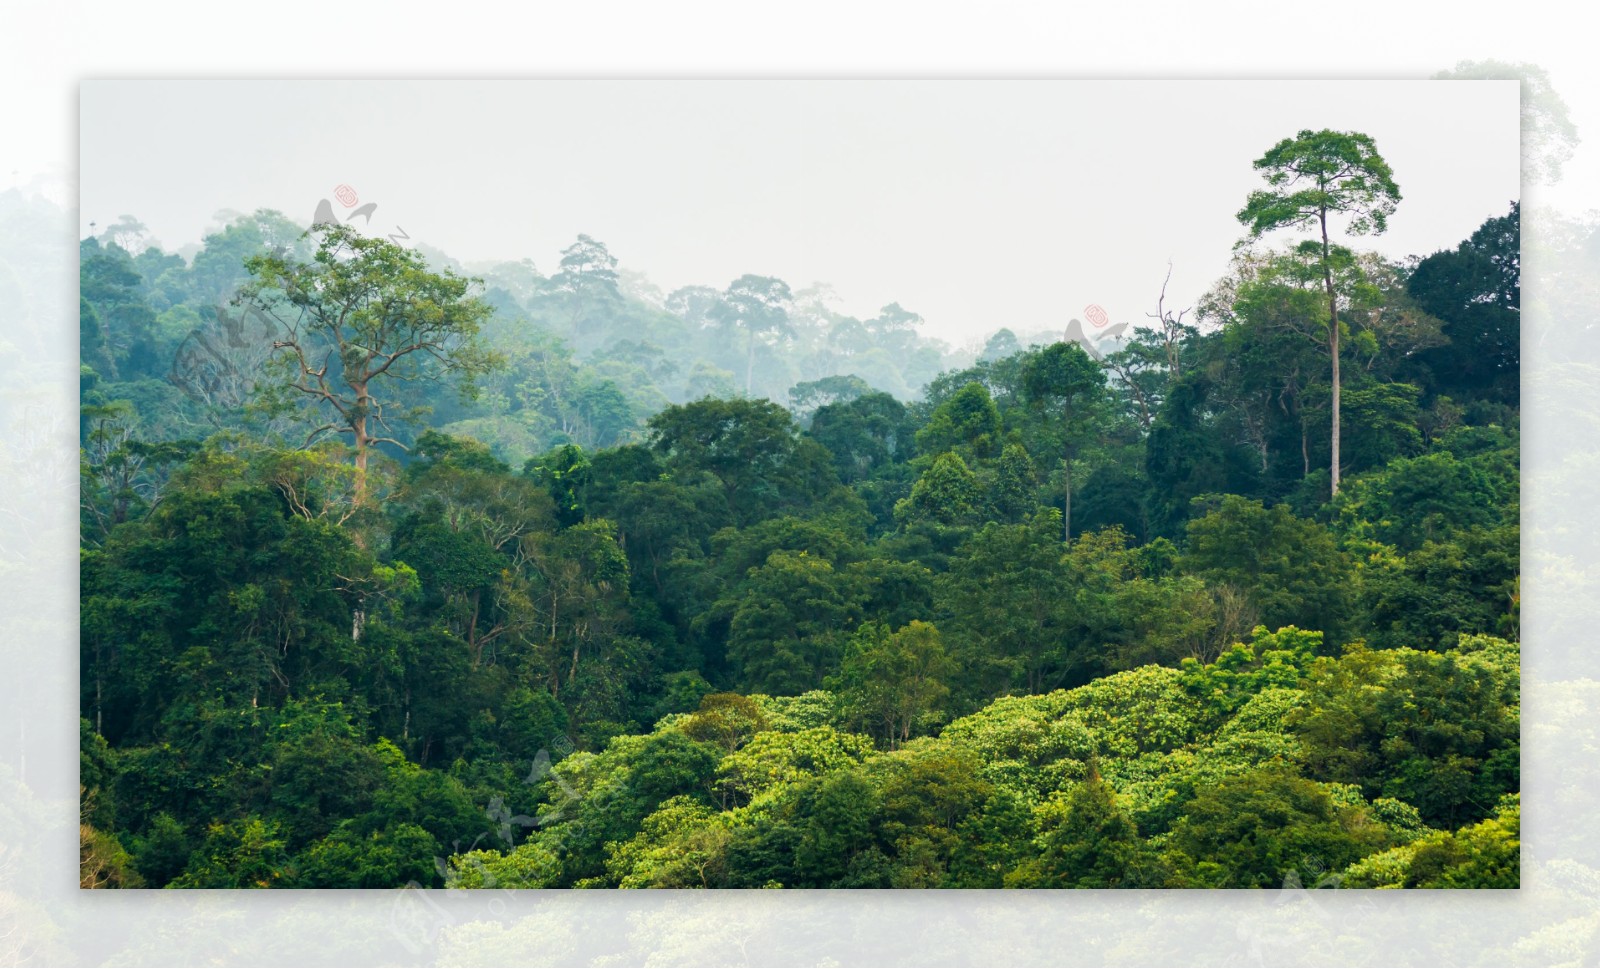 热带雨林景观树木